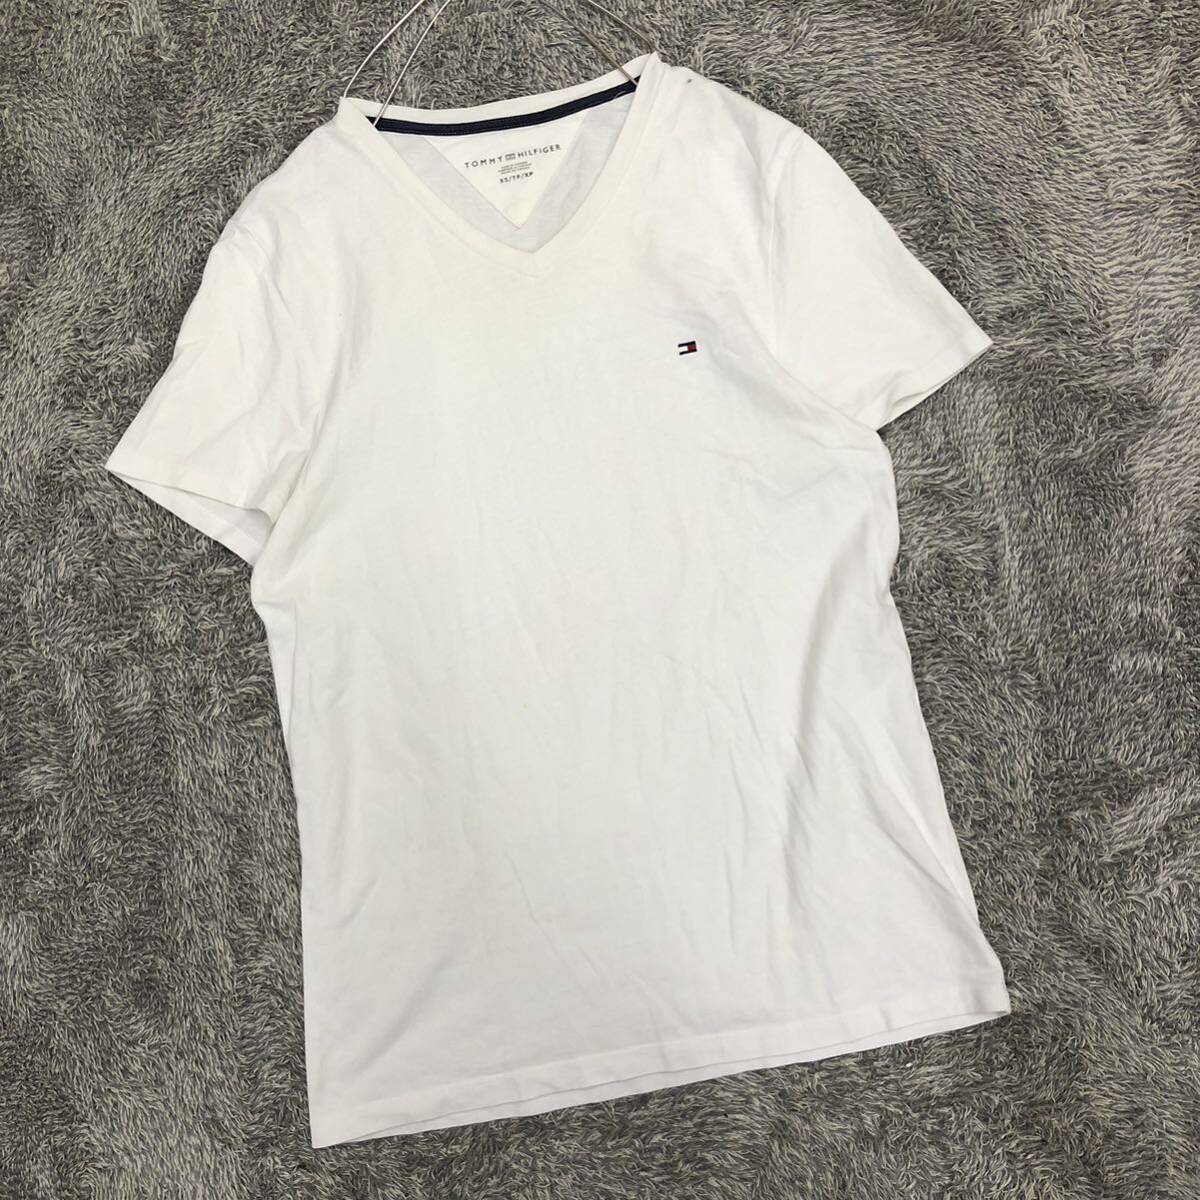 championTommy Hilfiger トミーヒルフィガー 半袖Tシャツ Vネックカットソー サイズXS ホワイト 白 メンズ トップス 最落なし （W18）の画像1